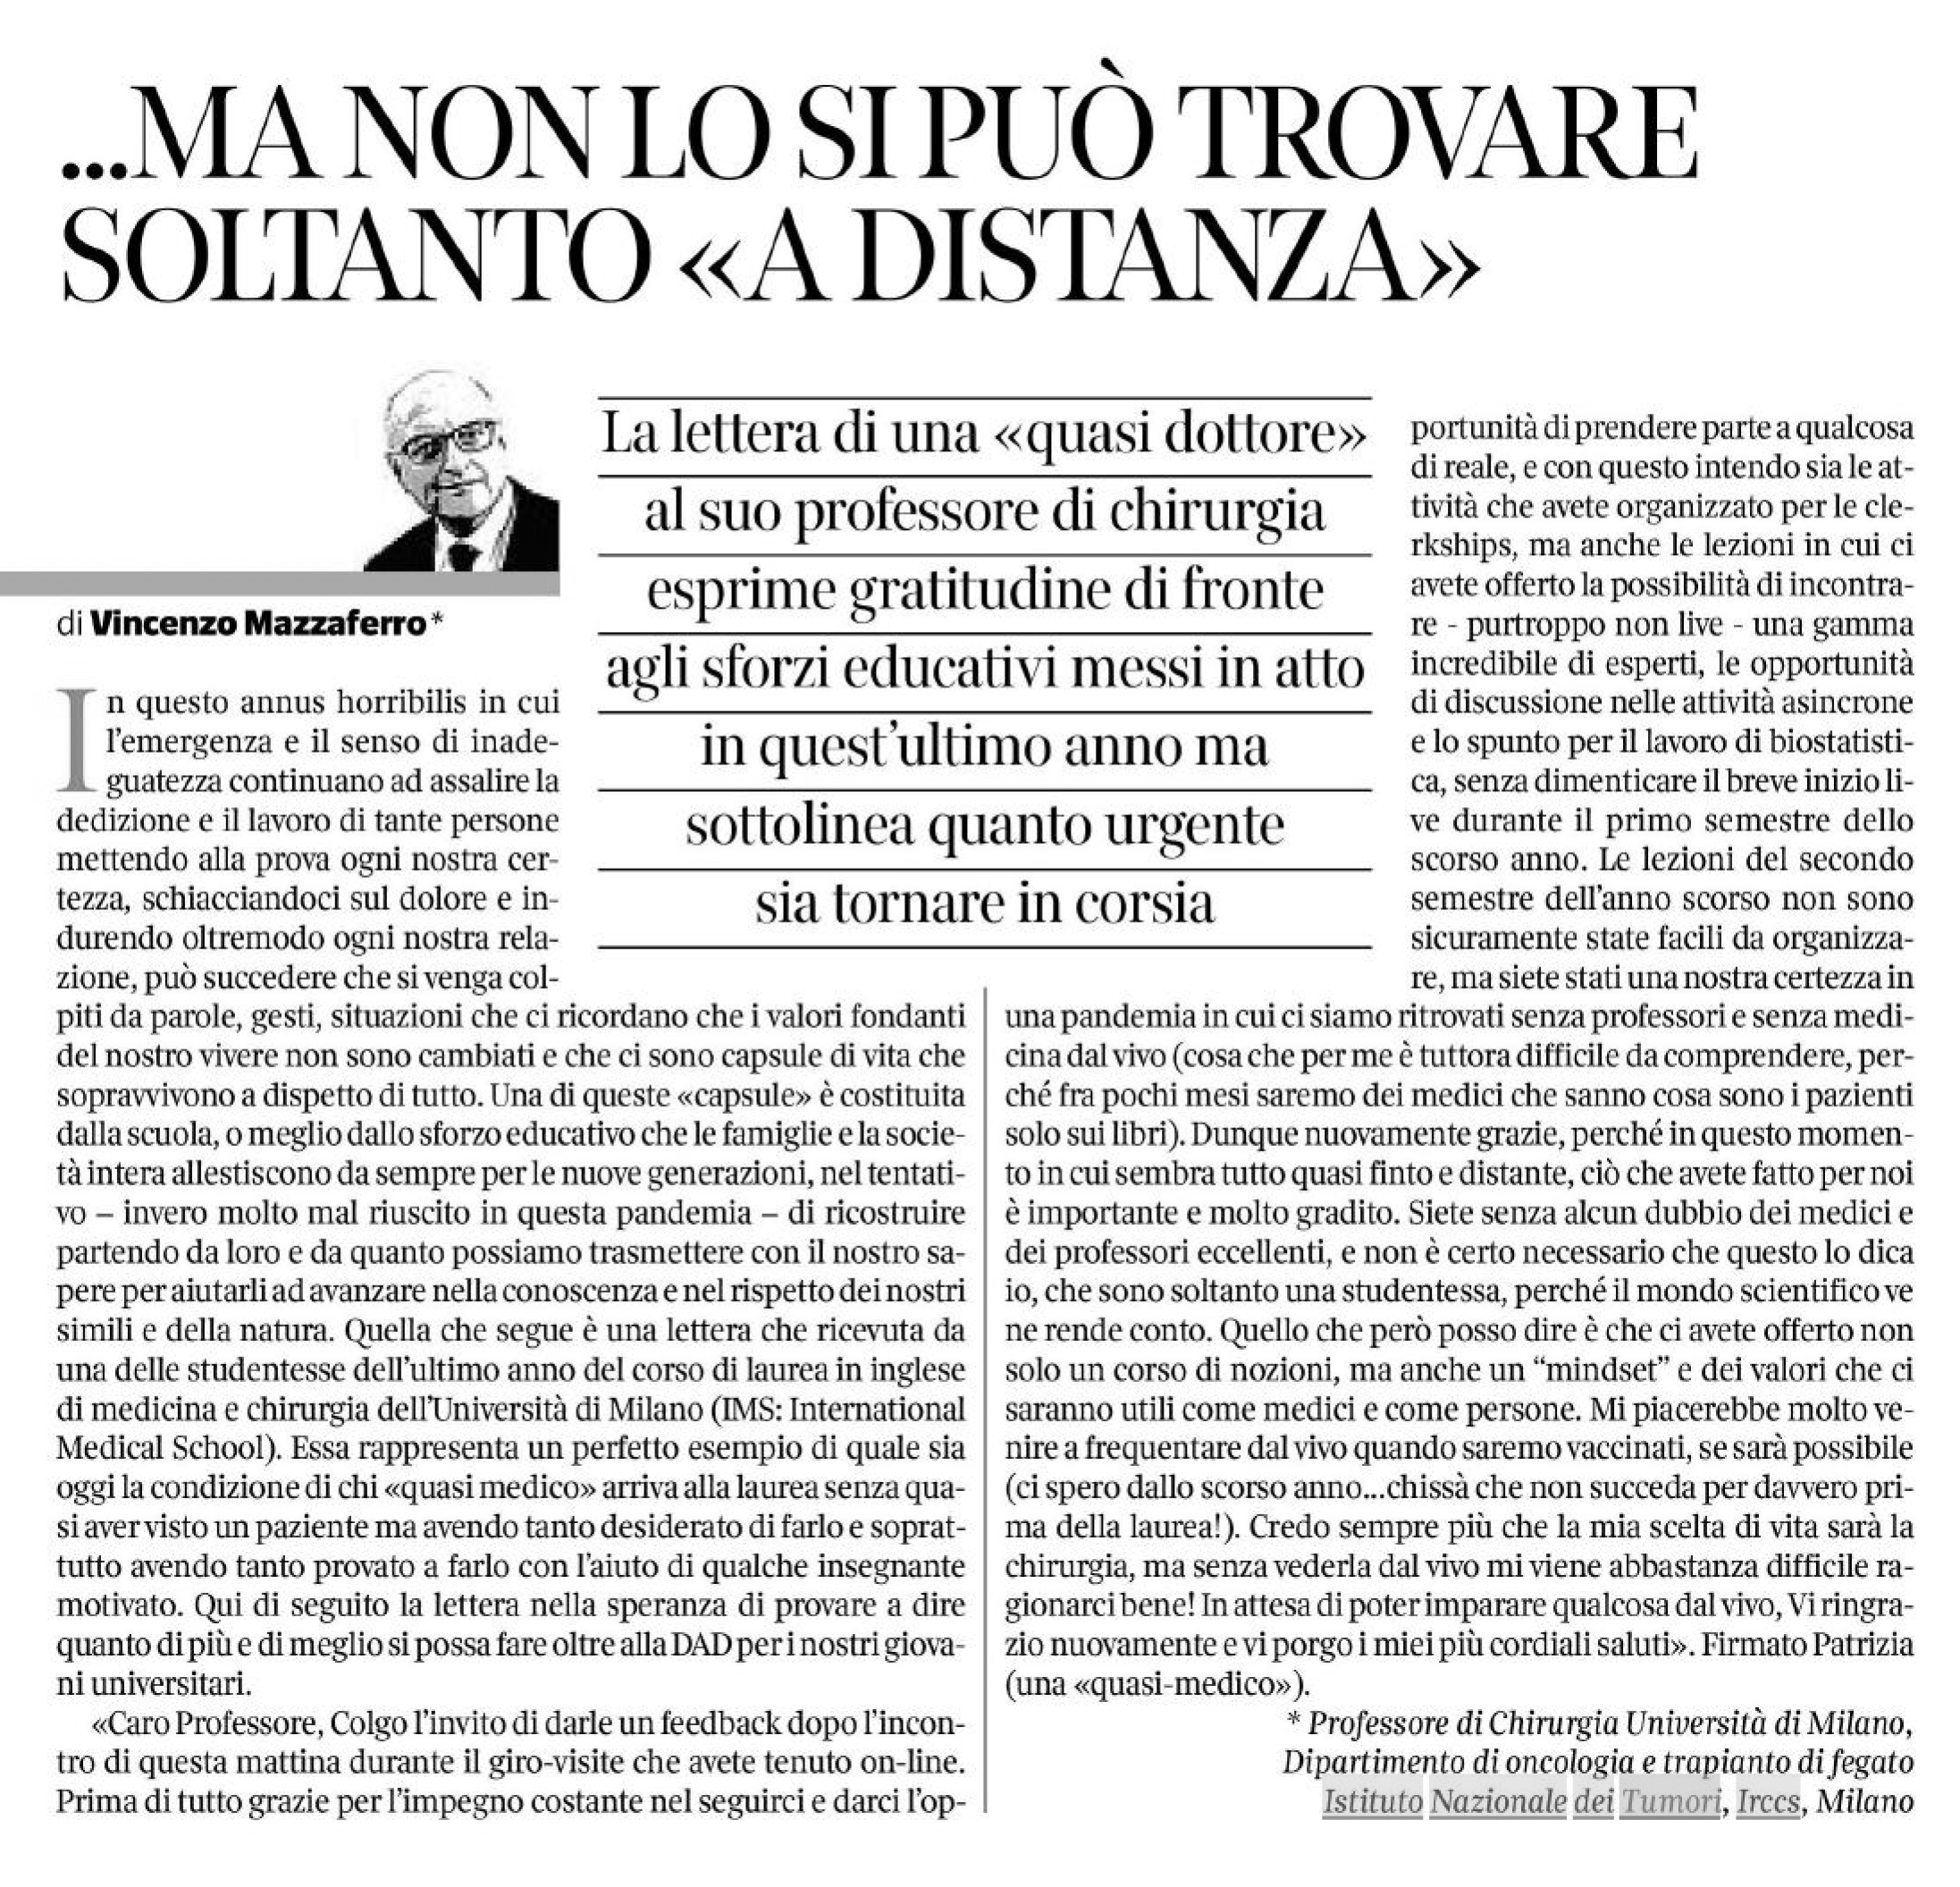 Corriere Salute Vincenzo Mazzaferro